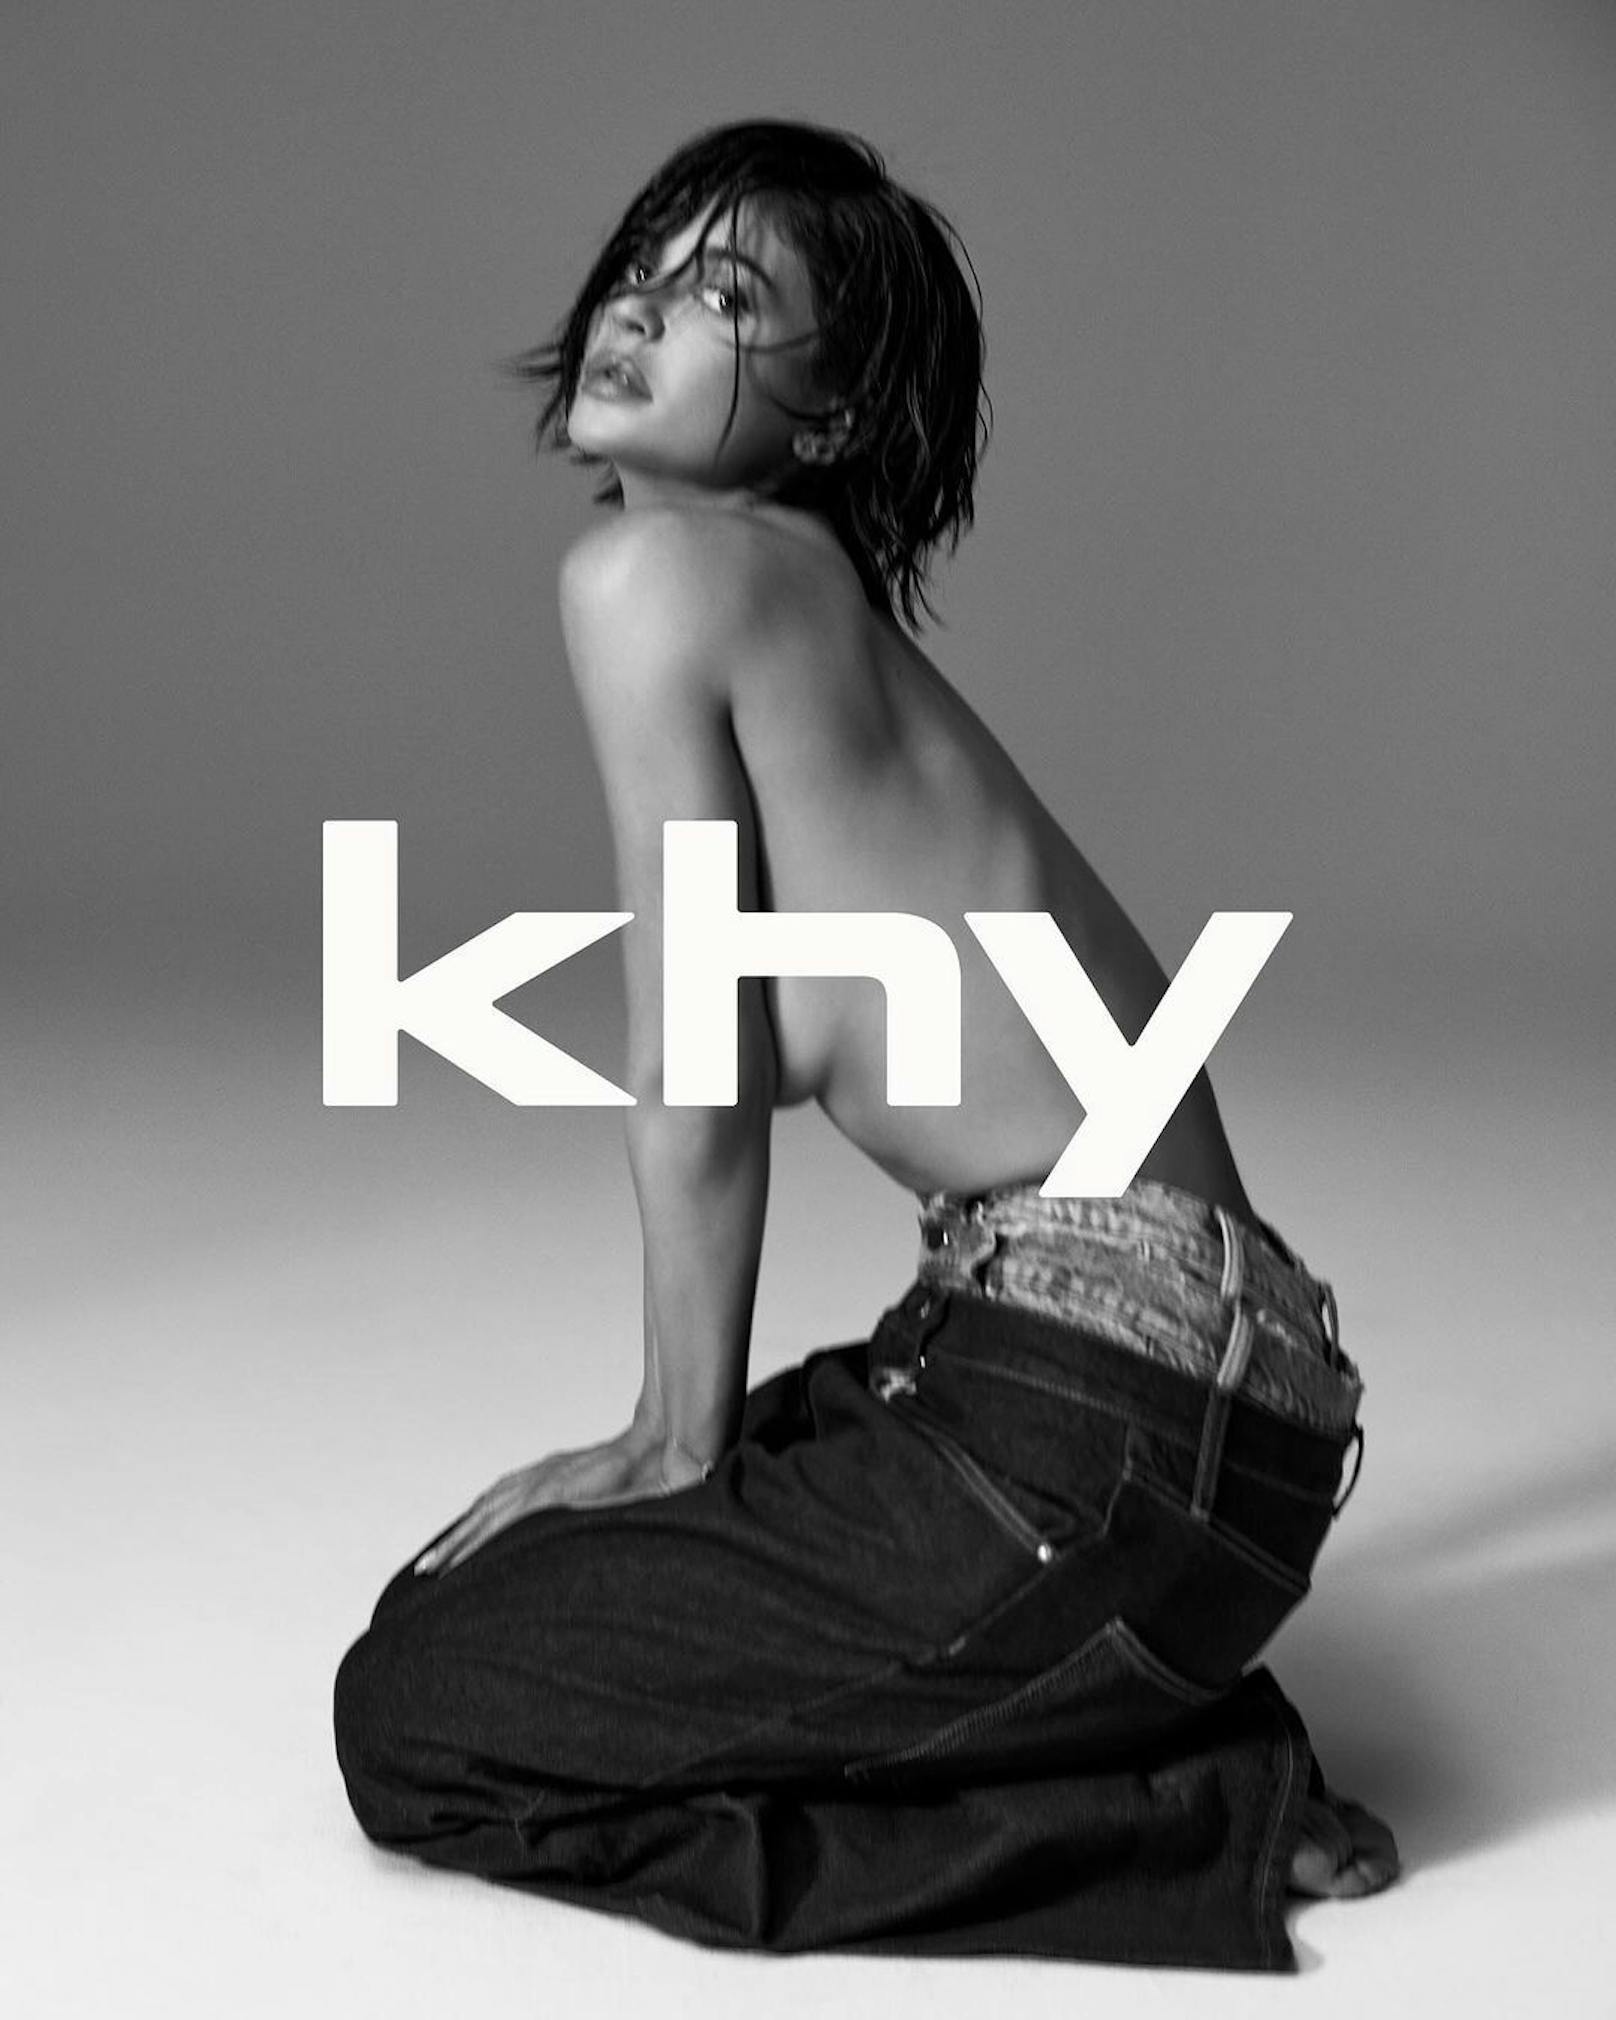 Kylie Jenner rug lediglich eine Jeans aus der erwarteten Drop-005 von "khy".